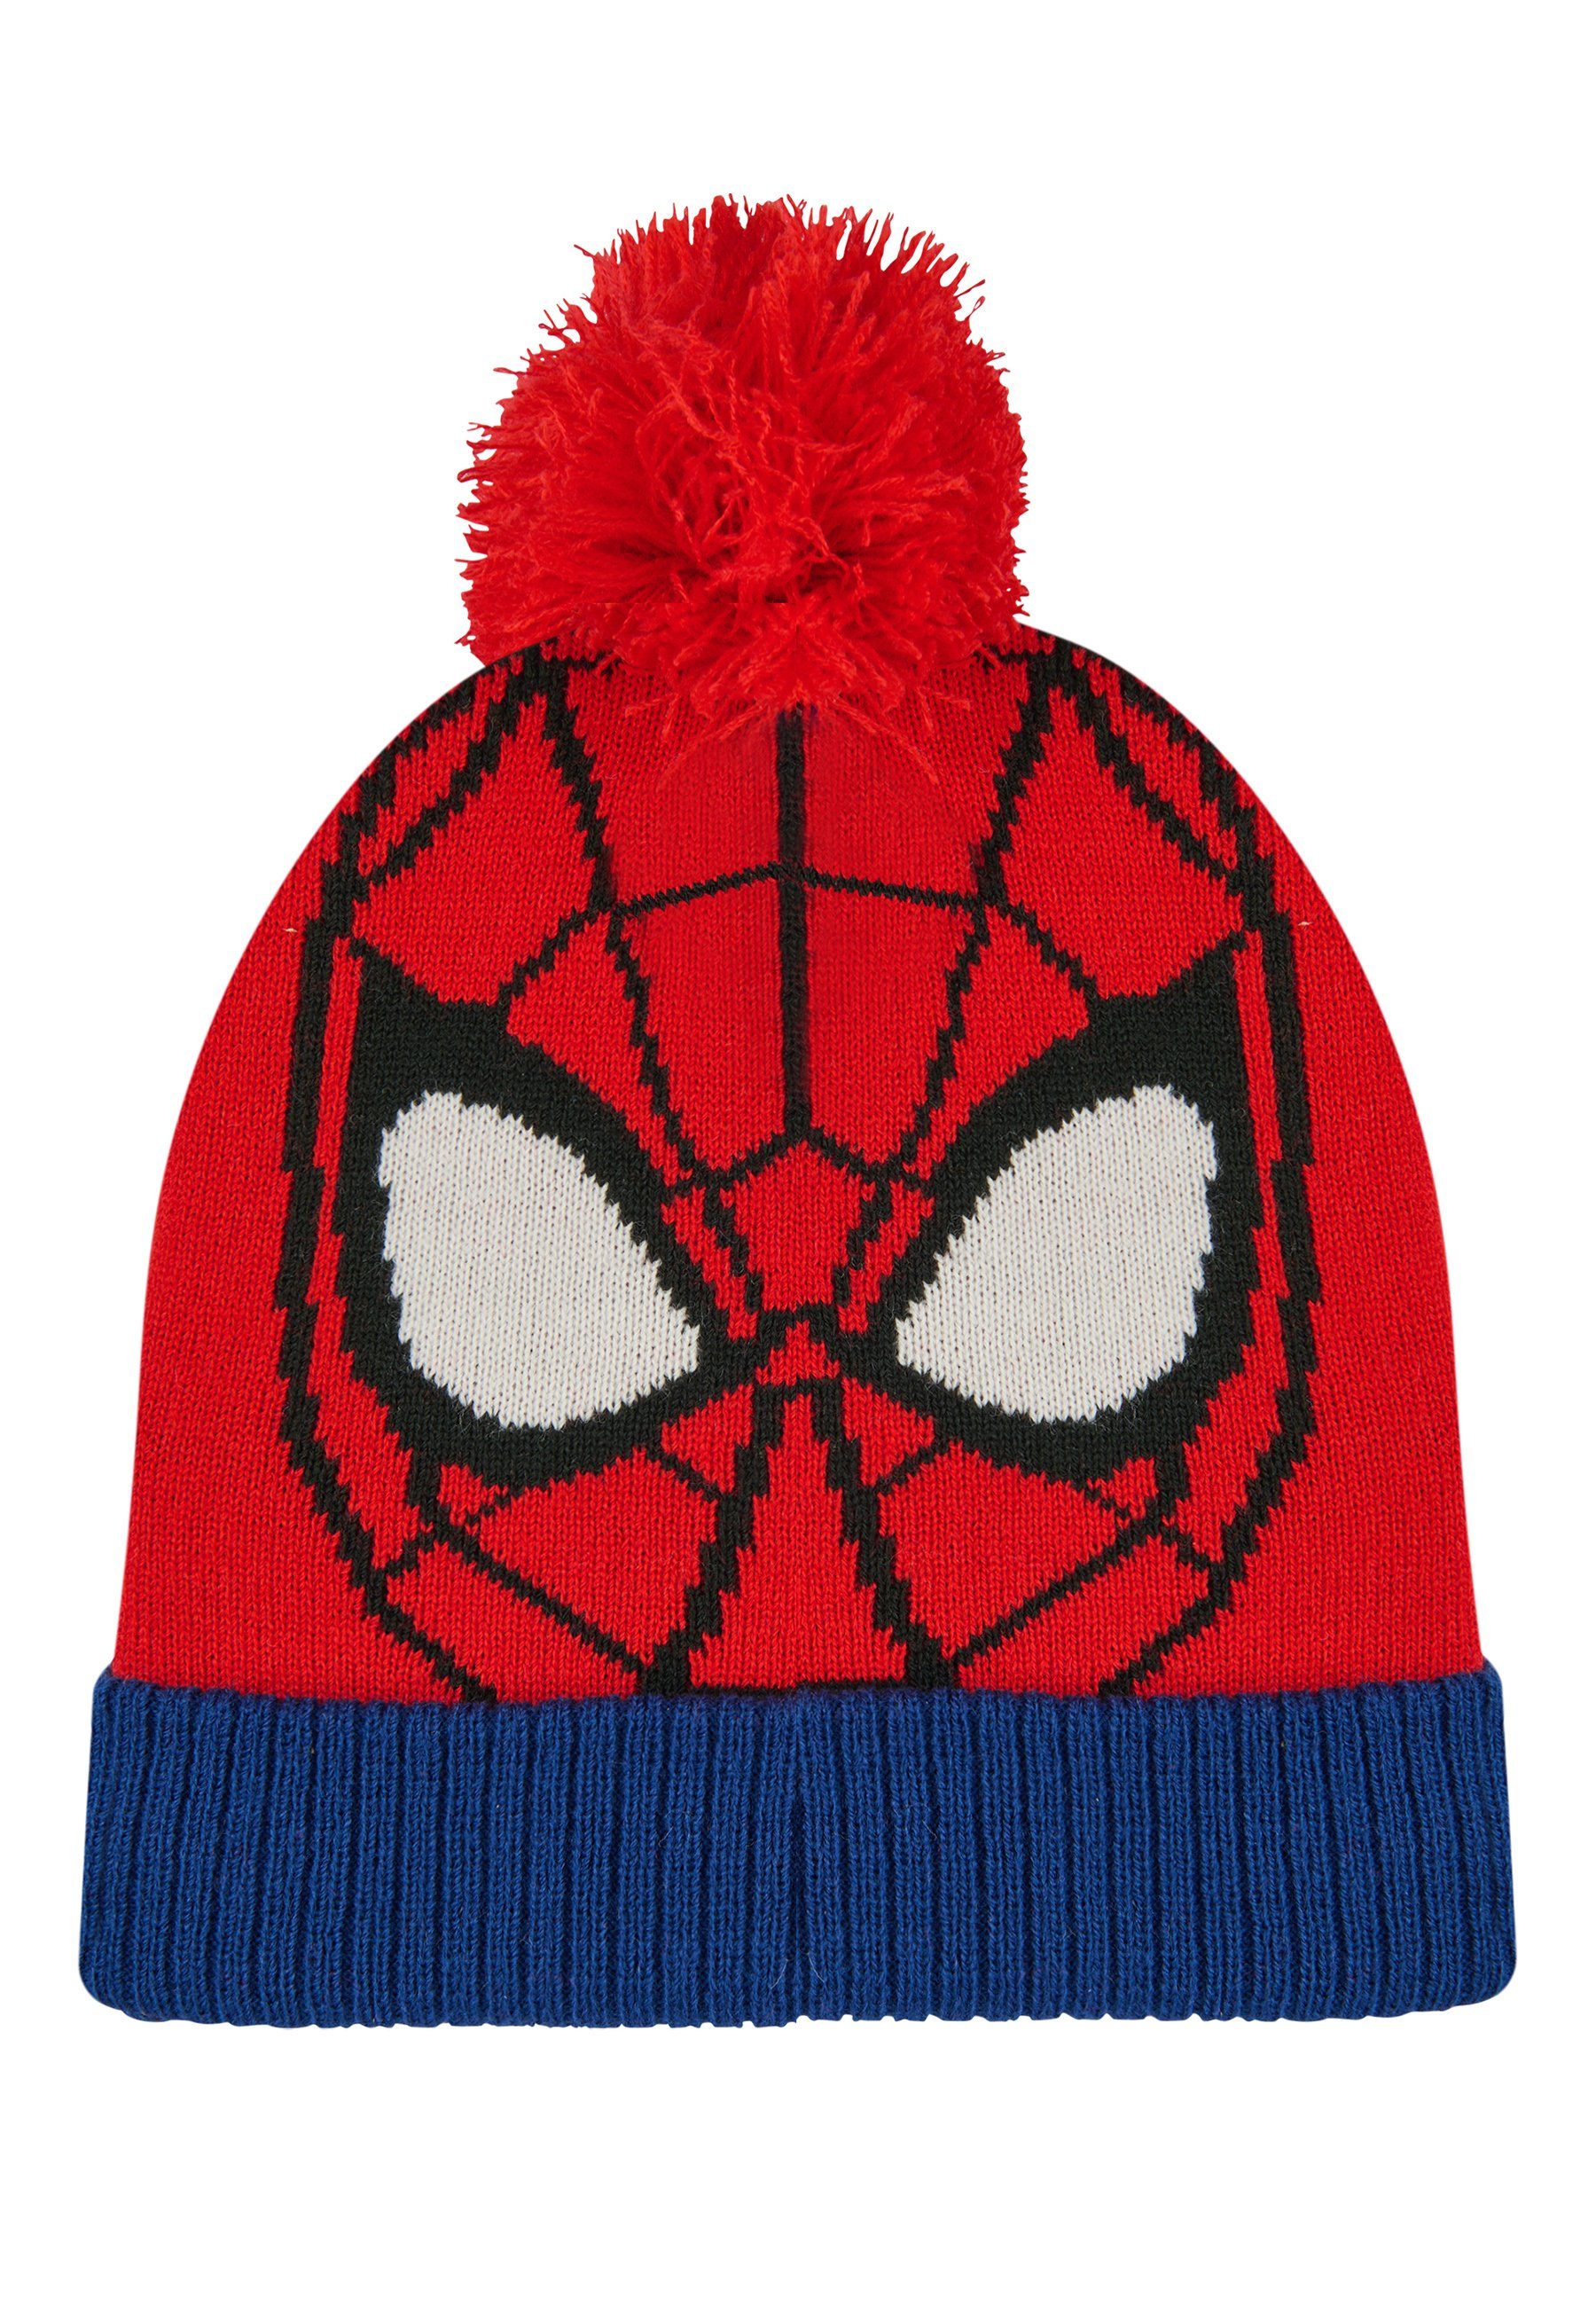 ONOMATO! Bommelmütze Spider-Man Jungen Kinder Winter-Mütze